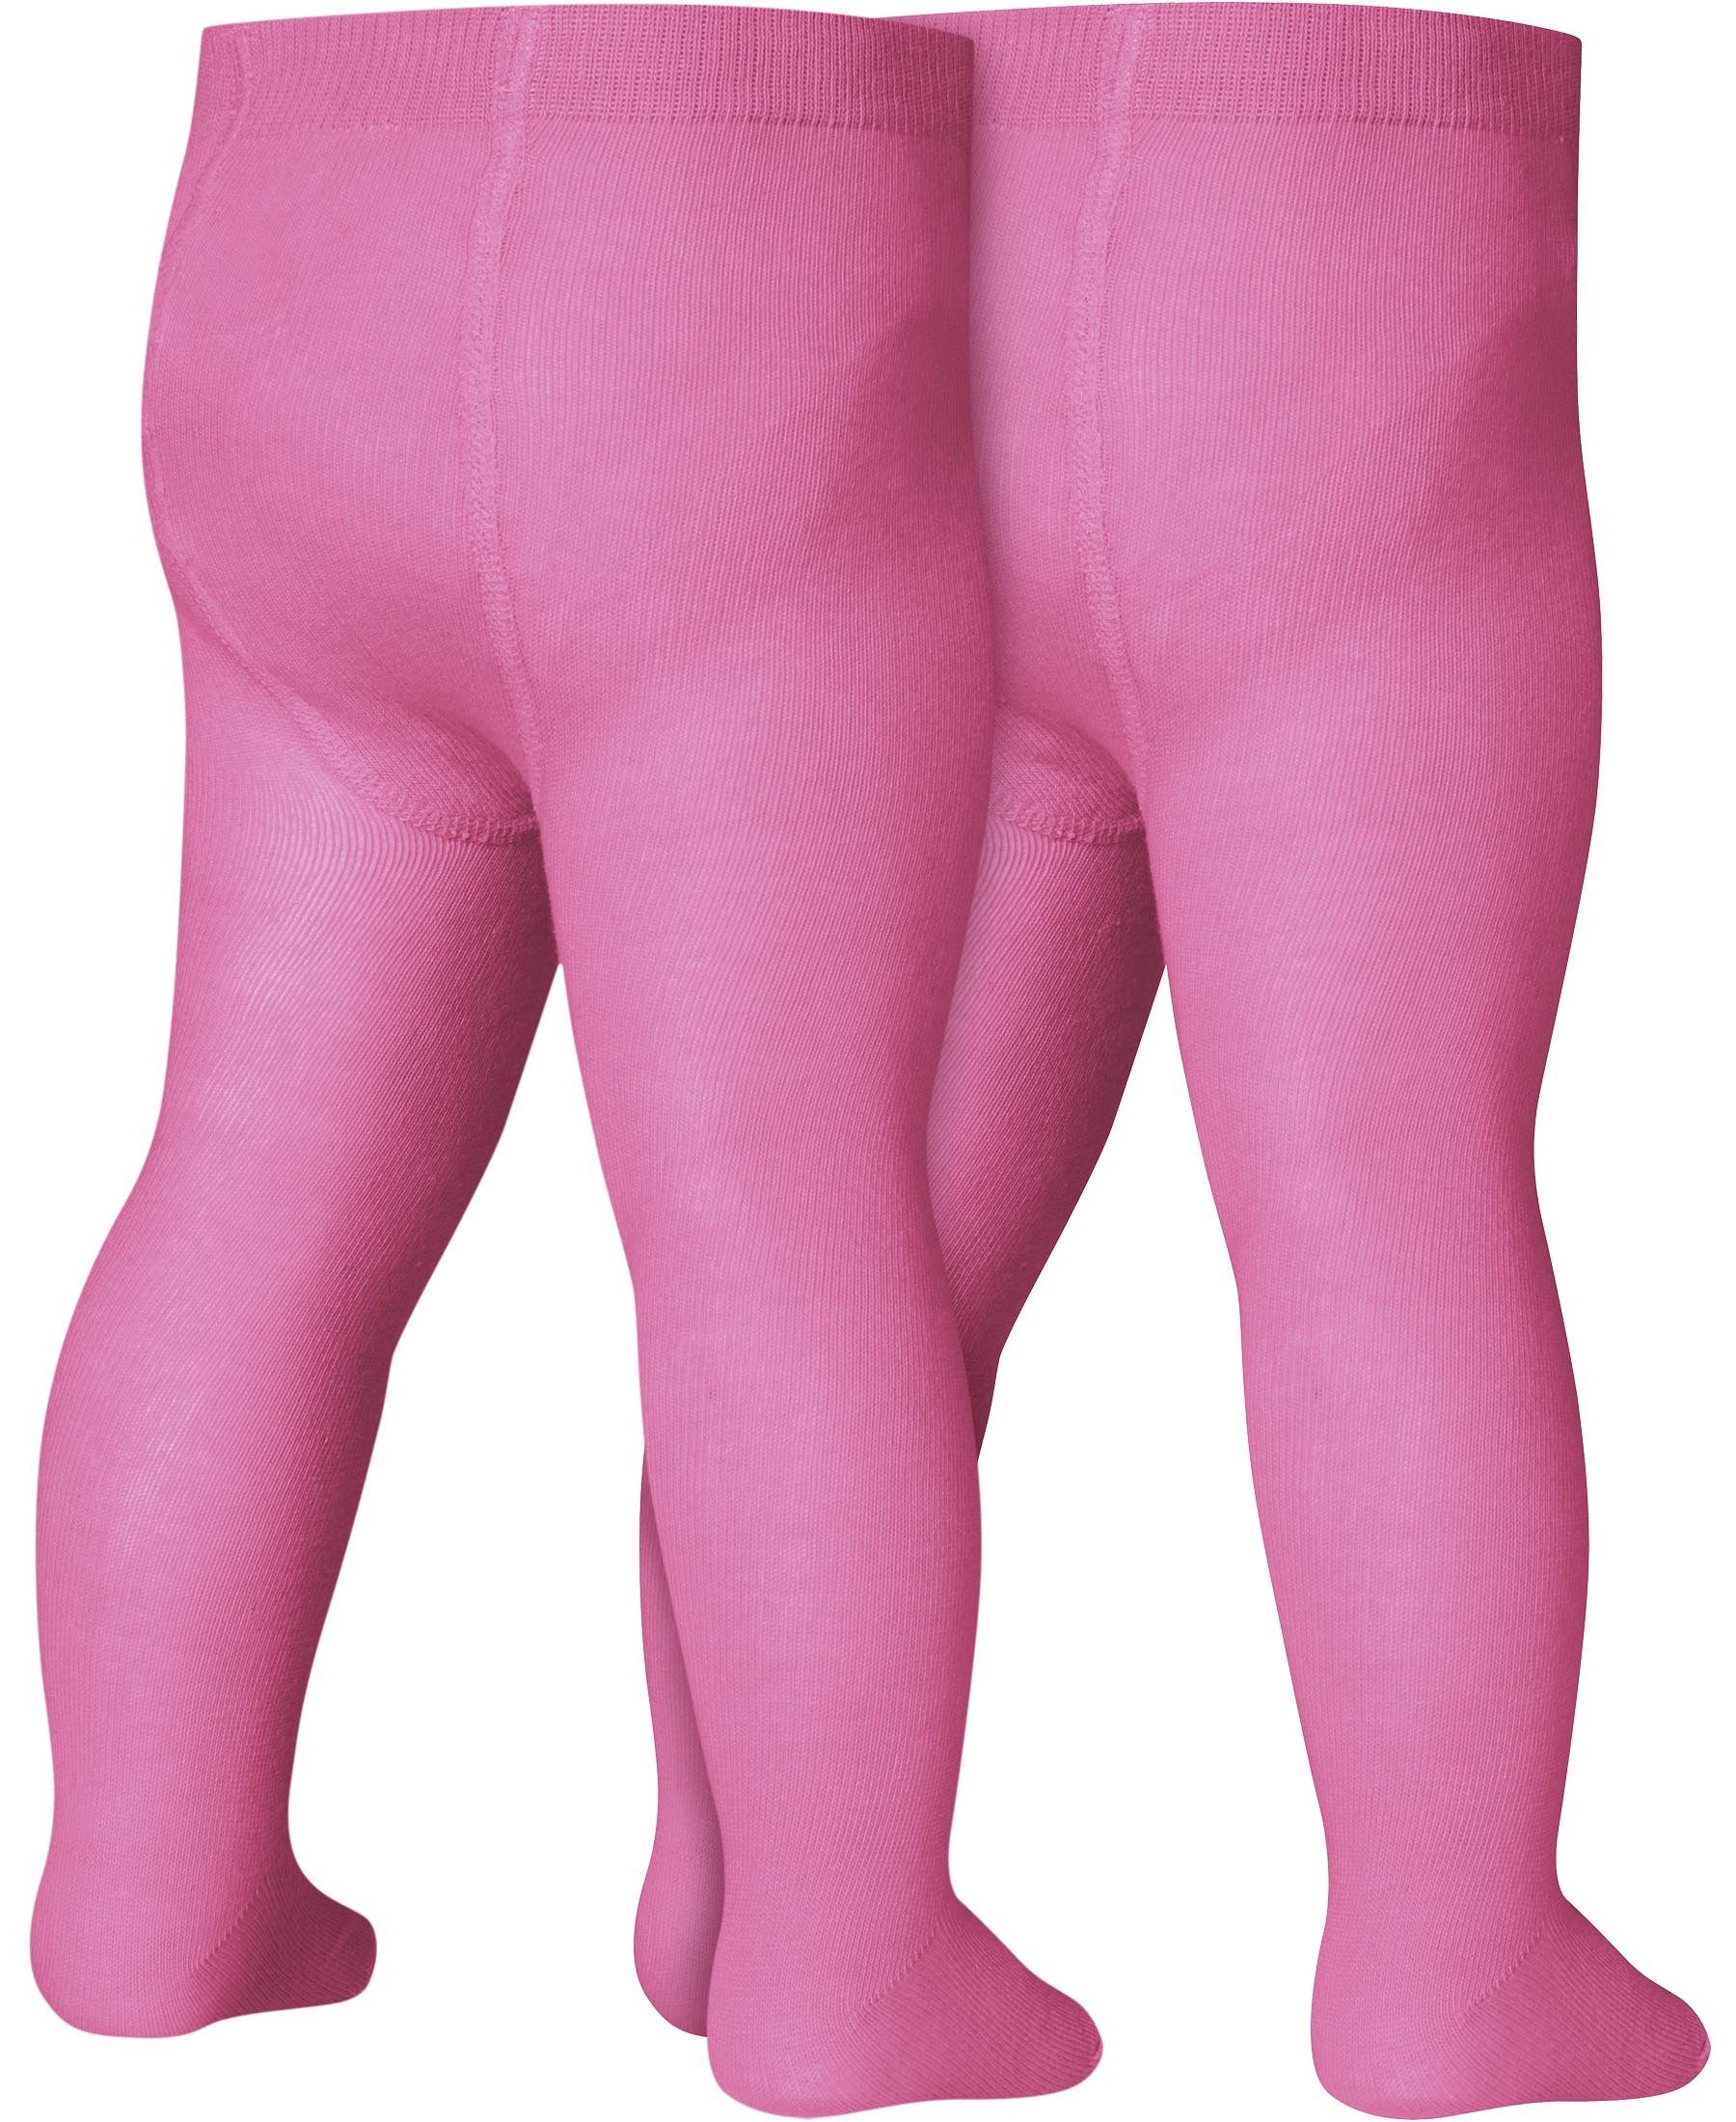 Strumpfhose Playshoes Strumpfhose Doppelpack pink uni